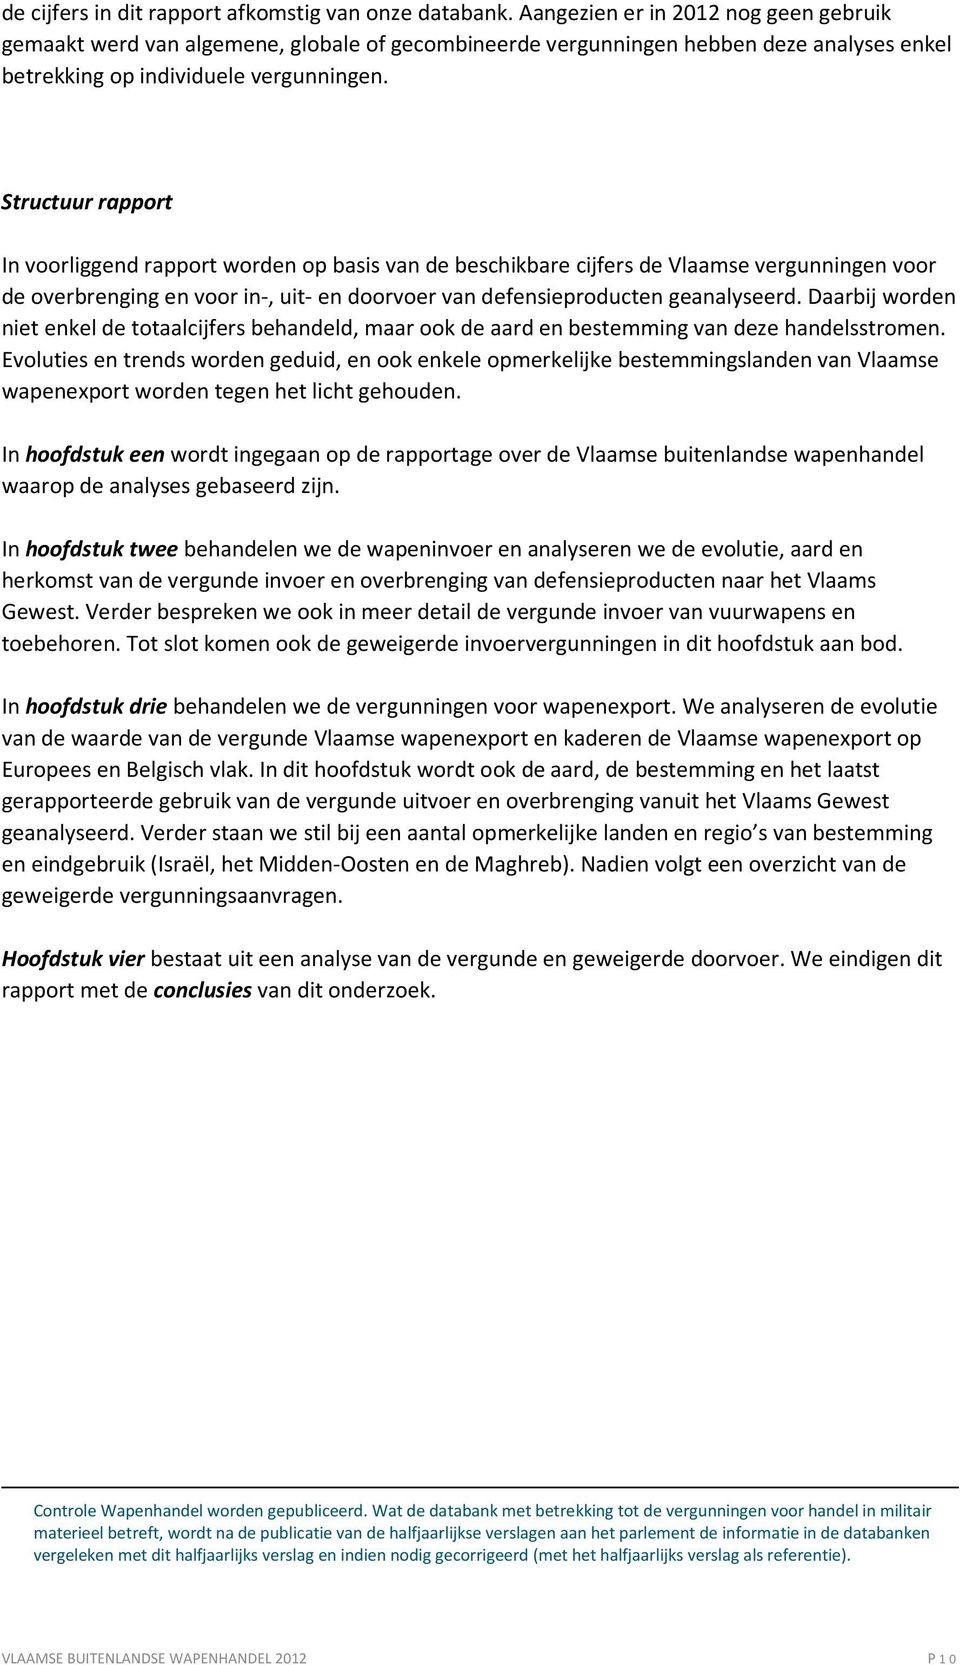 Structuur rapport In voorliggend rapport worden op basis van de beschikbare cijfers de Vlaamse vergunningen voor de overbrenging en voor in-, uit- en doorvoer van defensieproducten geanalyseerd.